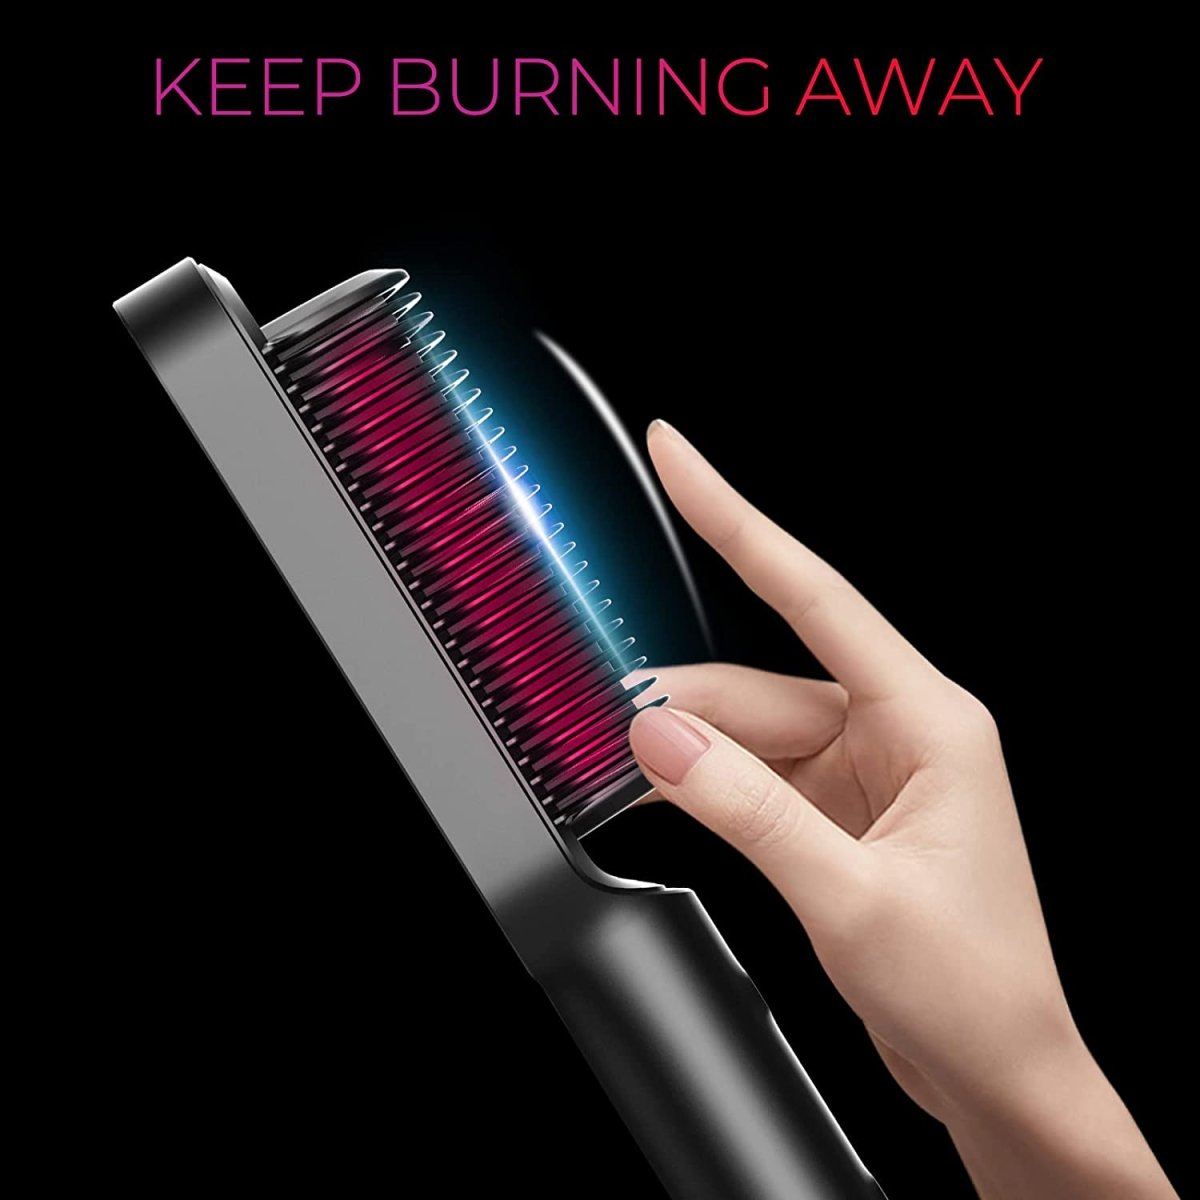 TYMO Hair Straightener Brush Straightening Comb and Iron 20s Fast Heating 5 Temp AU VERSION